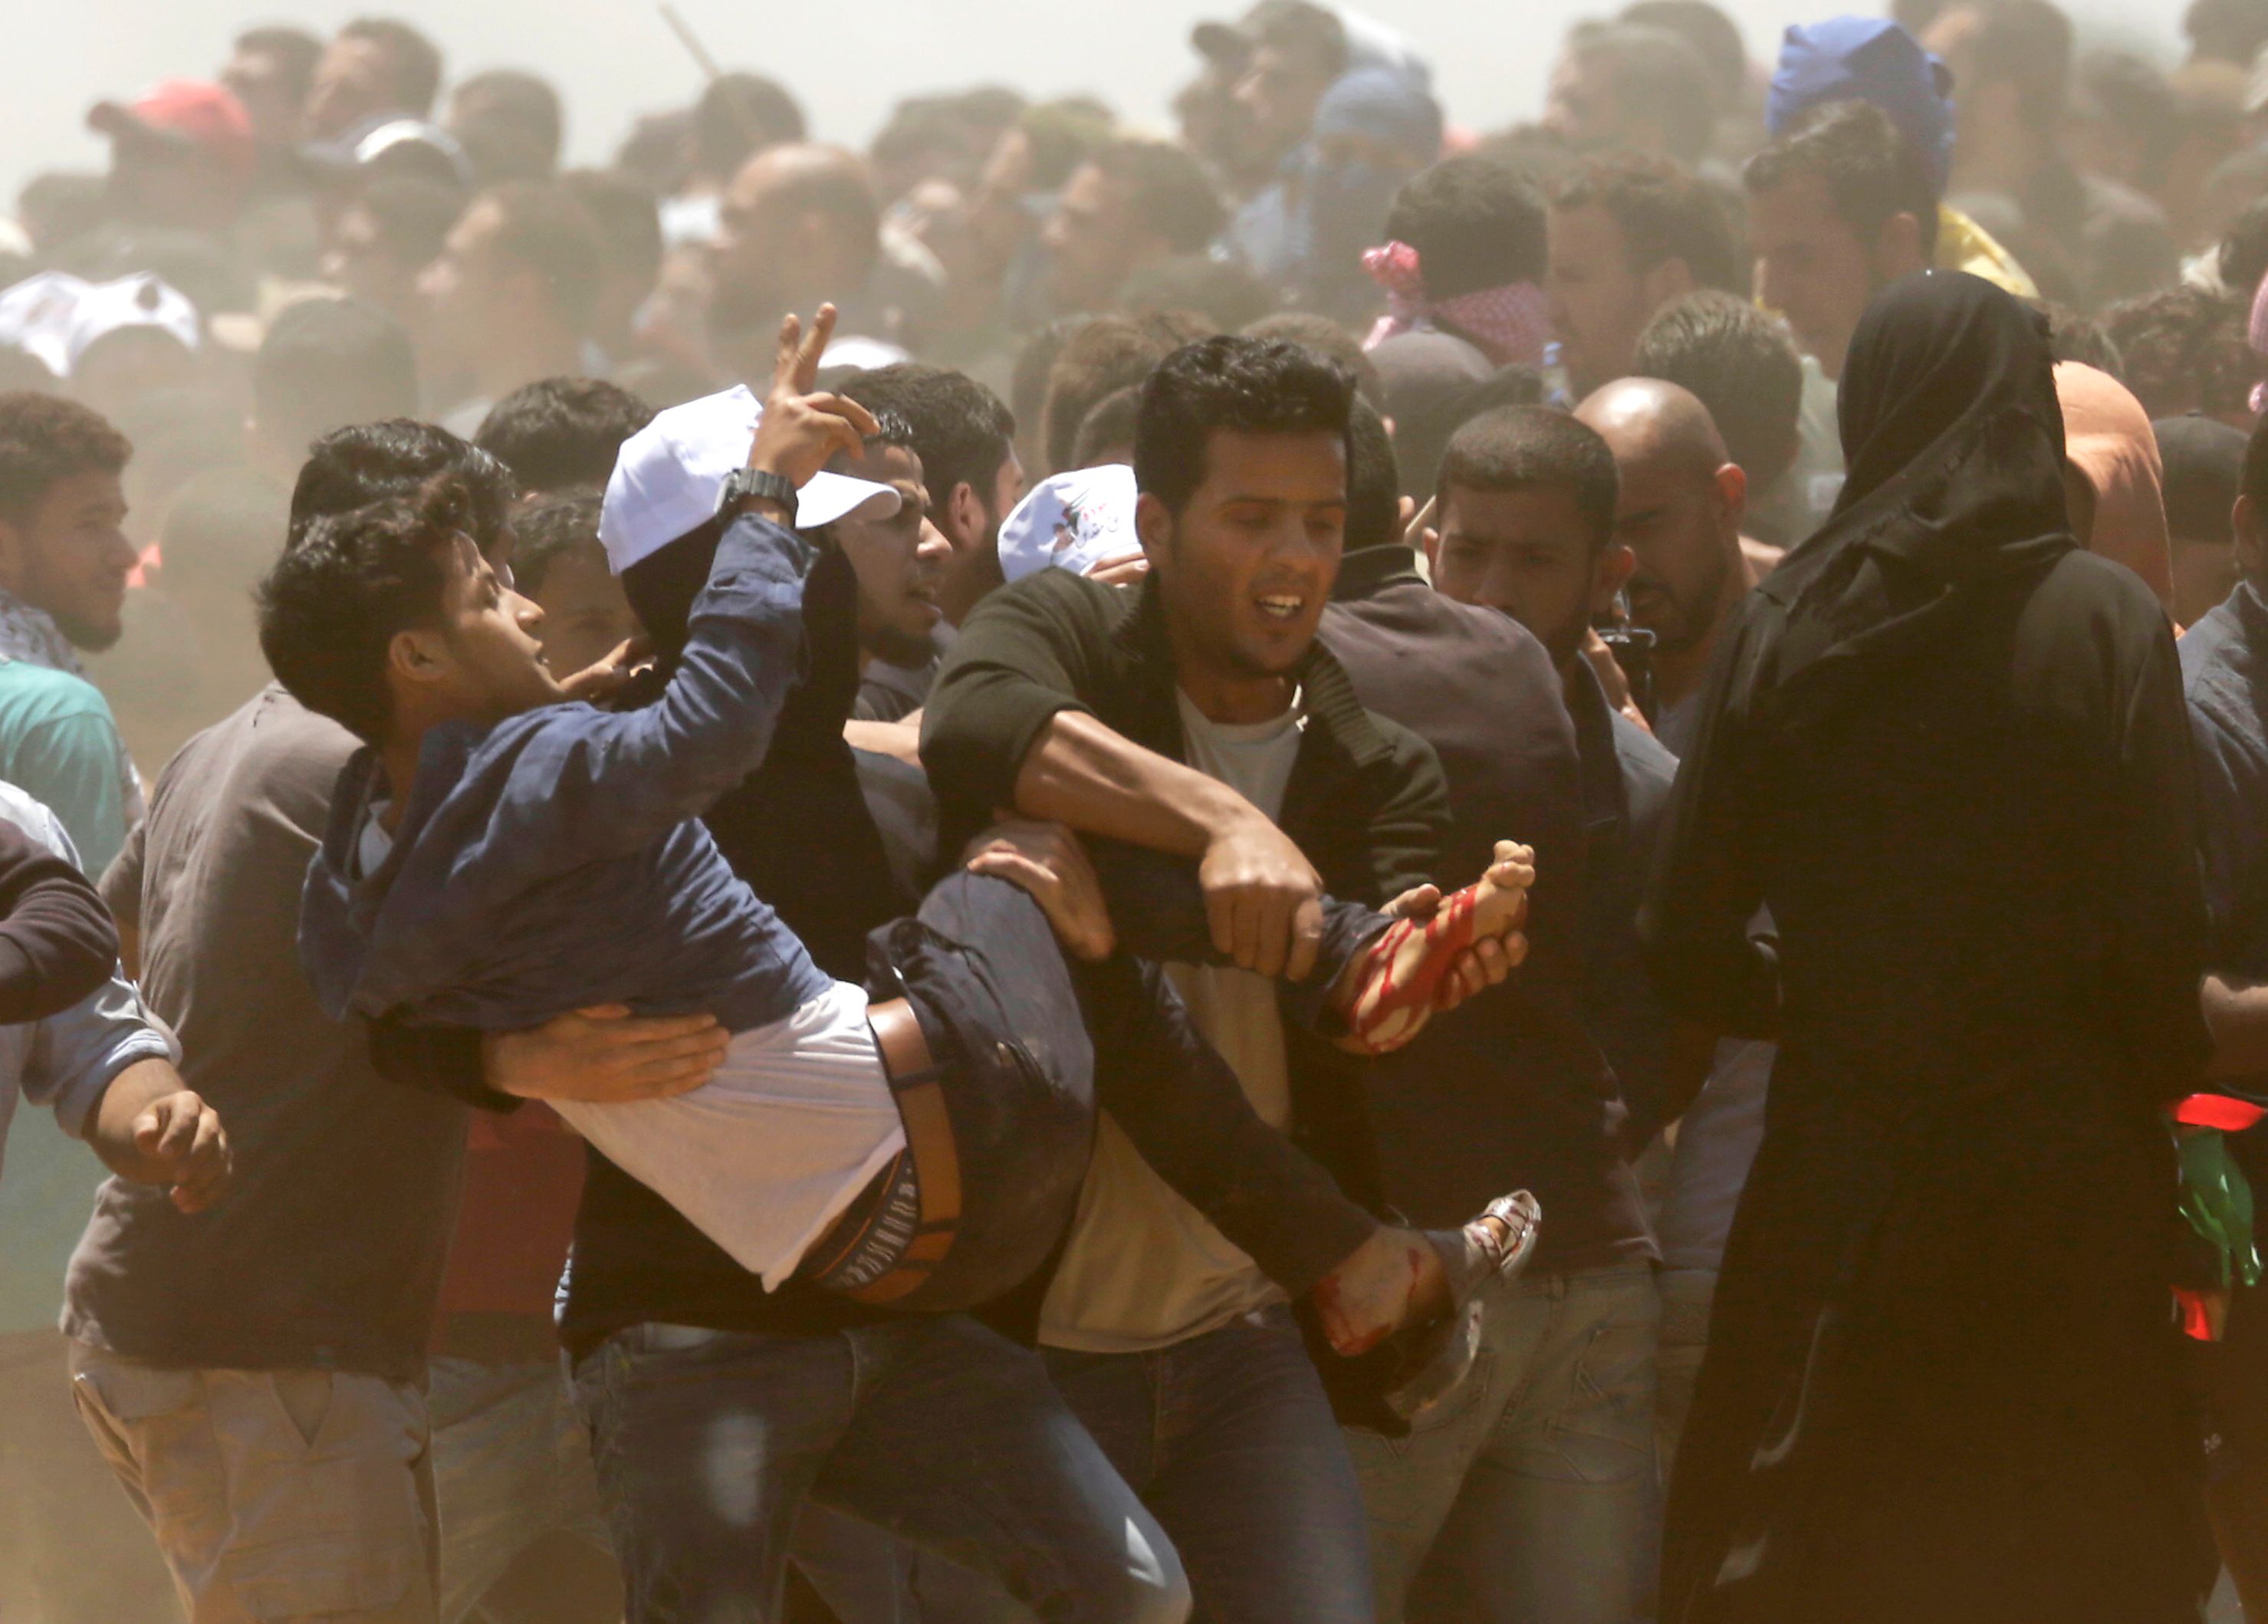 شباب فلسطينيين يحملون صديقهم المصاب فى مواجهة الاحتلال